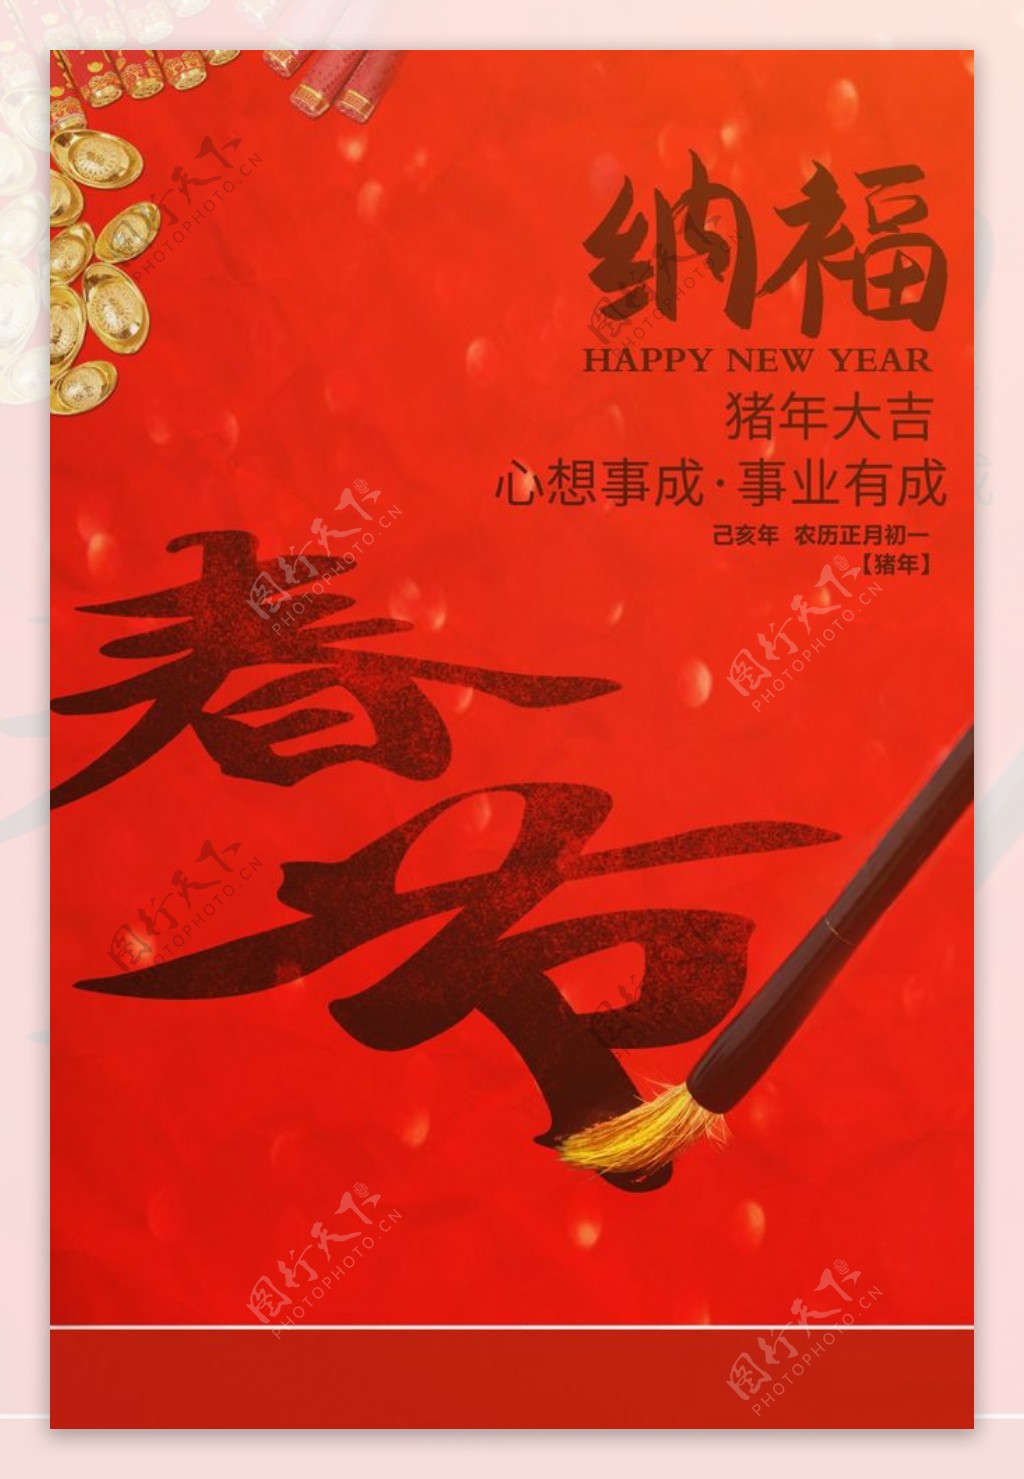 春节传统节日促销宣传海报素材